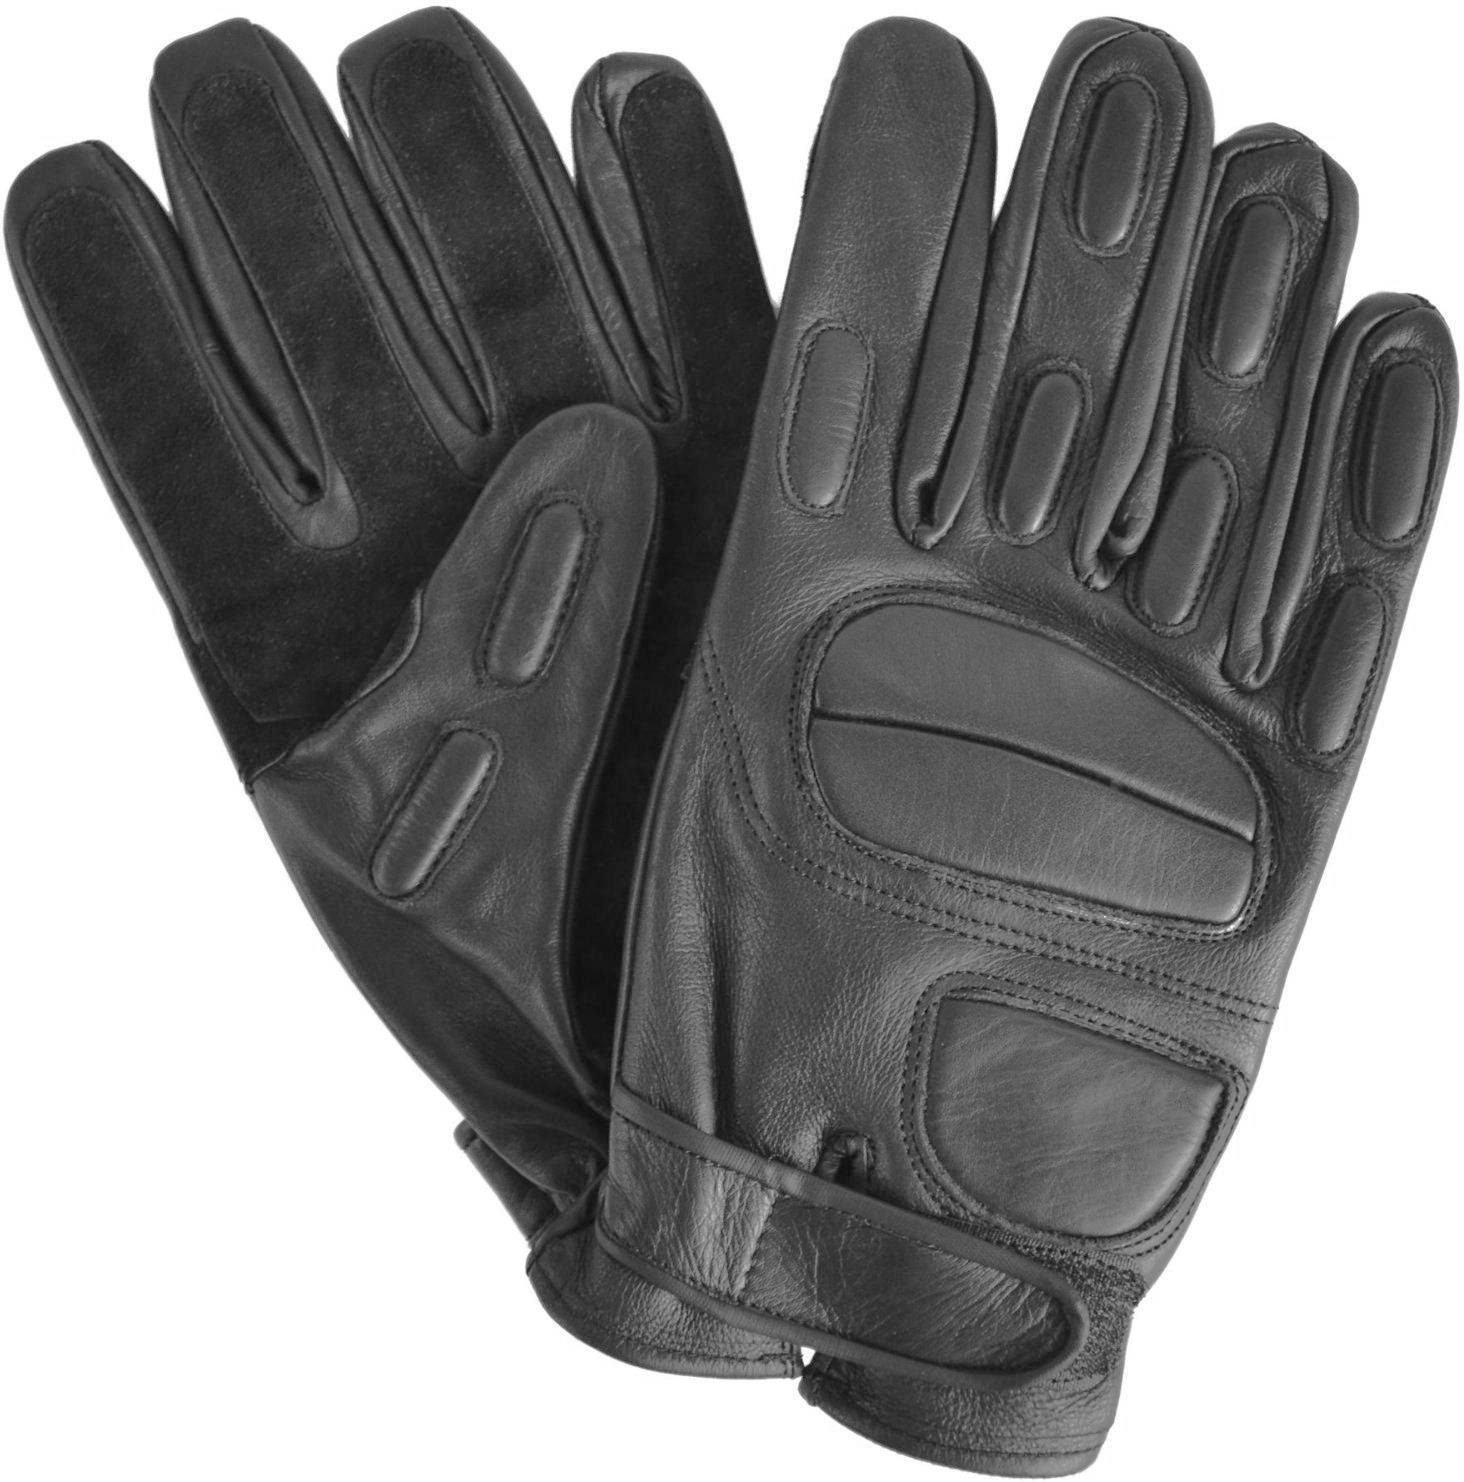 normani Multisporthandschuhe Combat-Handschuhe Operator Lederhandschuhe mit Kevlarfutter - schnitthemmend - und Protektoren